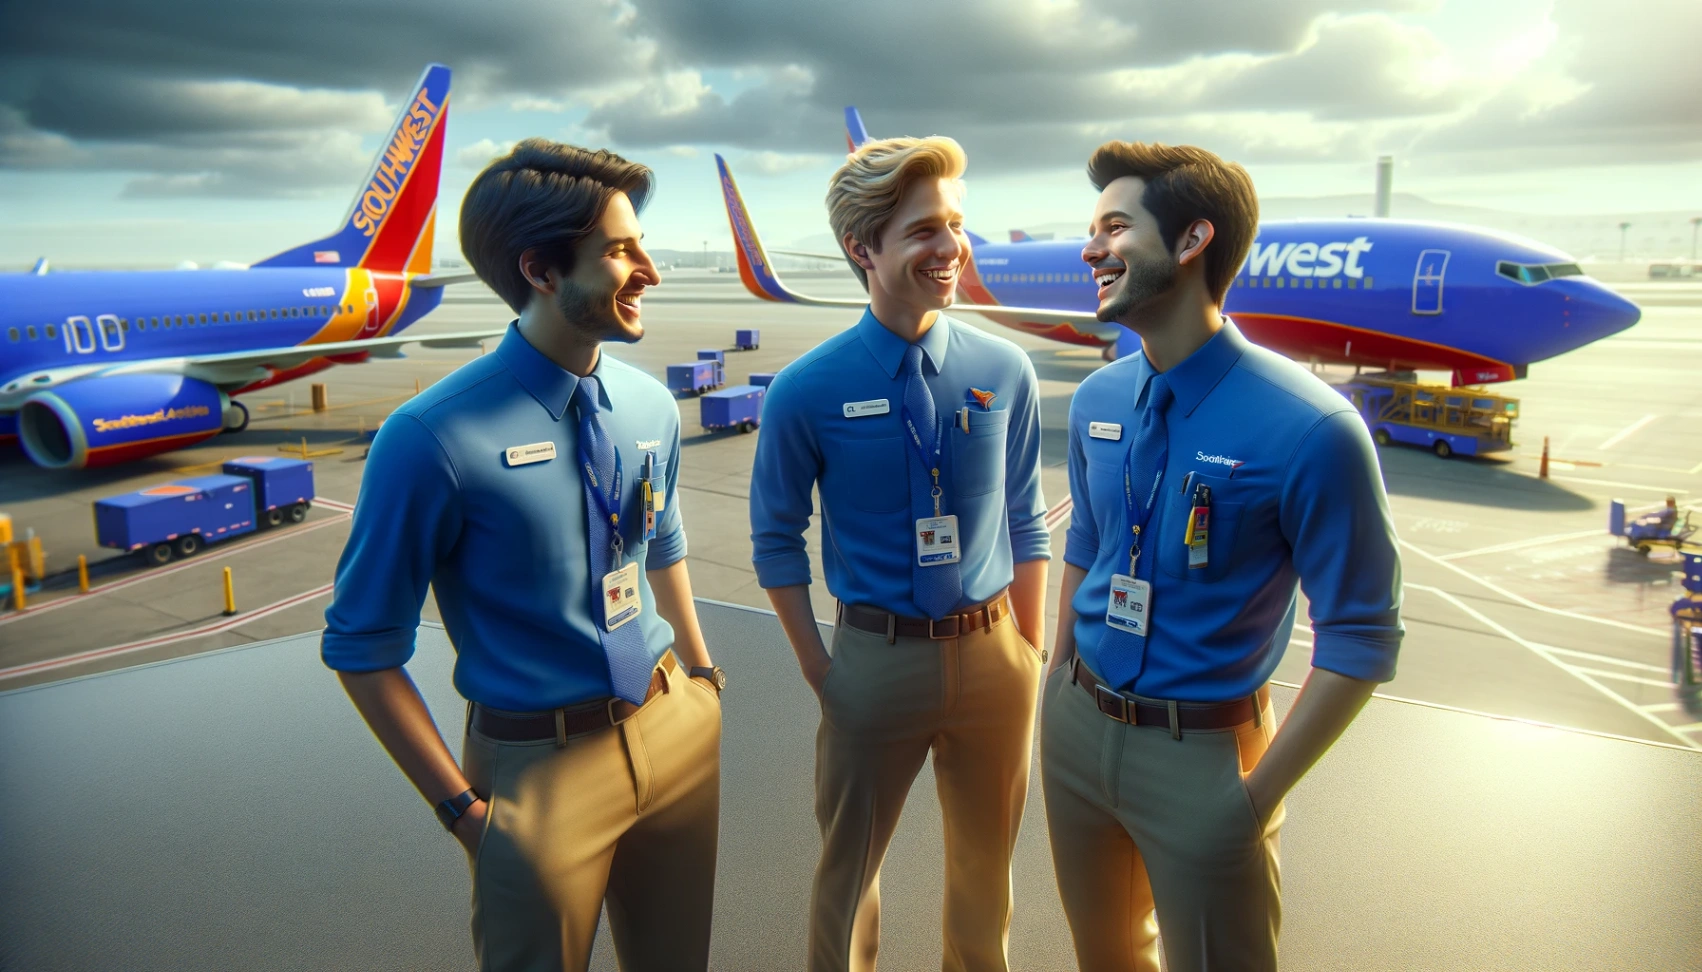 Vacatures bij Southwest Airlines: Ontdek hoe je kunt solliciteren